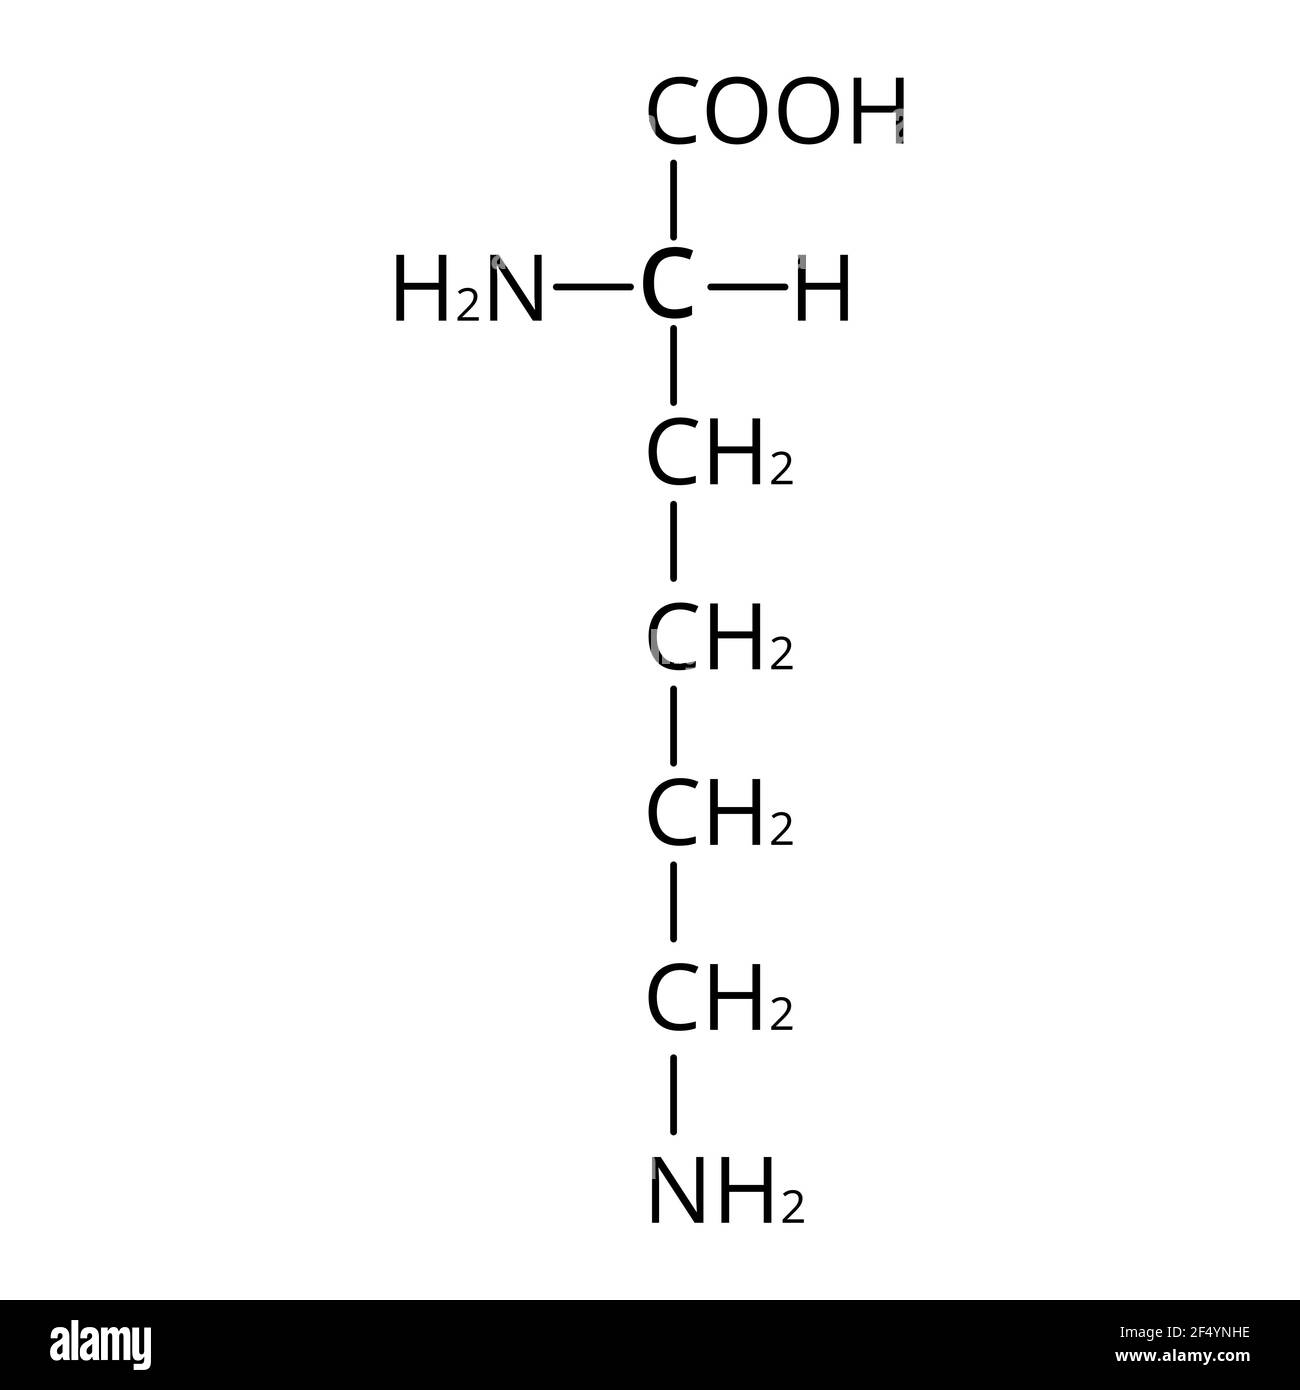 Aminosäure Lysin. Chemische Molekülformel Lysin ist eine Aminosäure. Vektorgrafik auf isoliertem Hintergrund Stock Vektor